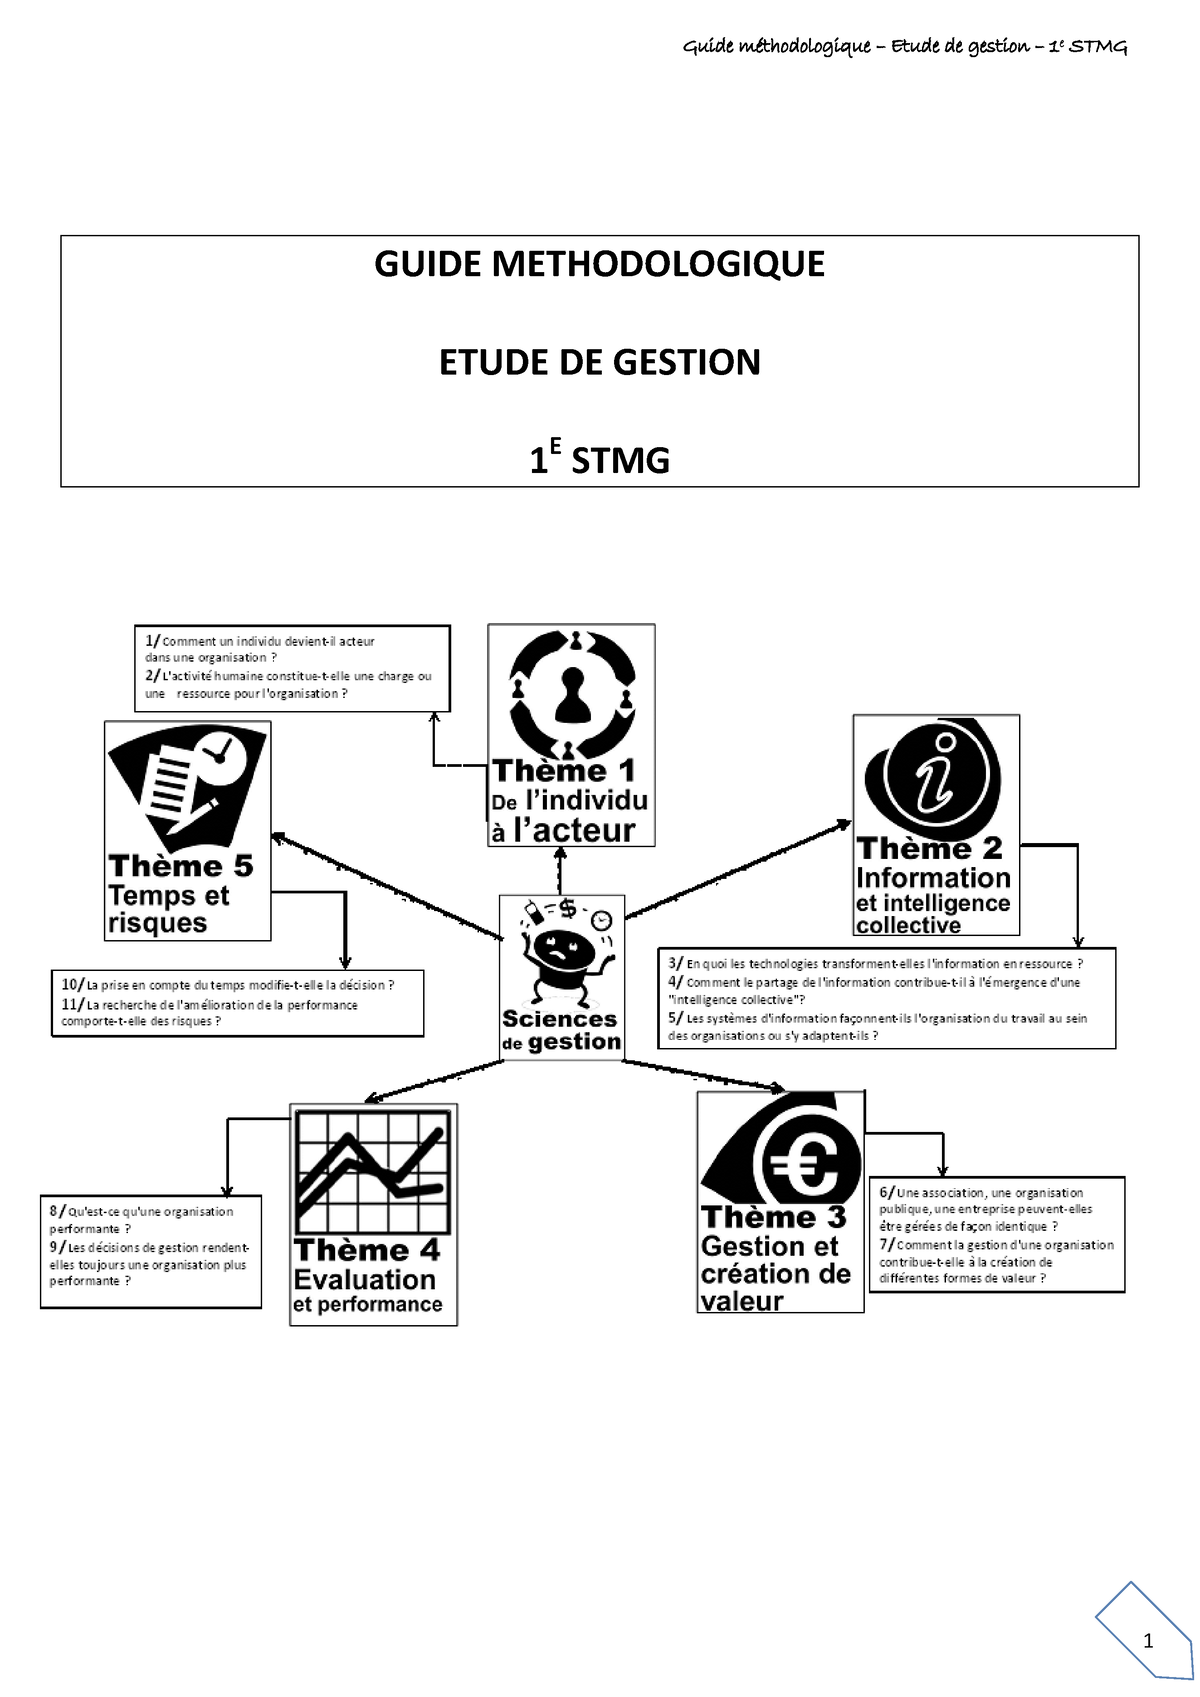 Etude De Gestion Stmg Exemple De Synthèse Bac stmg etude de gestion guide methodologique - GUIDE METHODOLOGIQUE ETUDE  DE GESTION 1 E STMG - Studocu